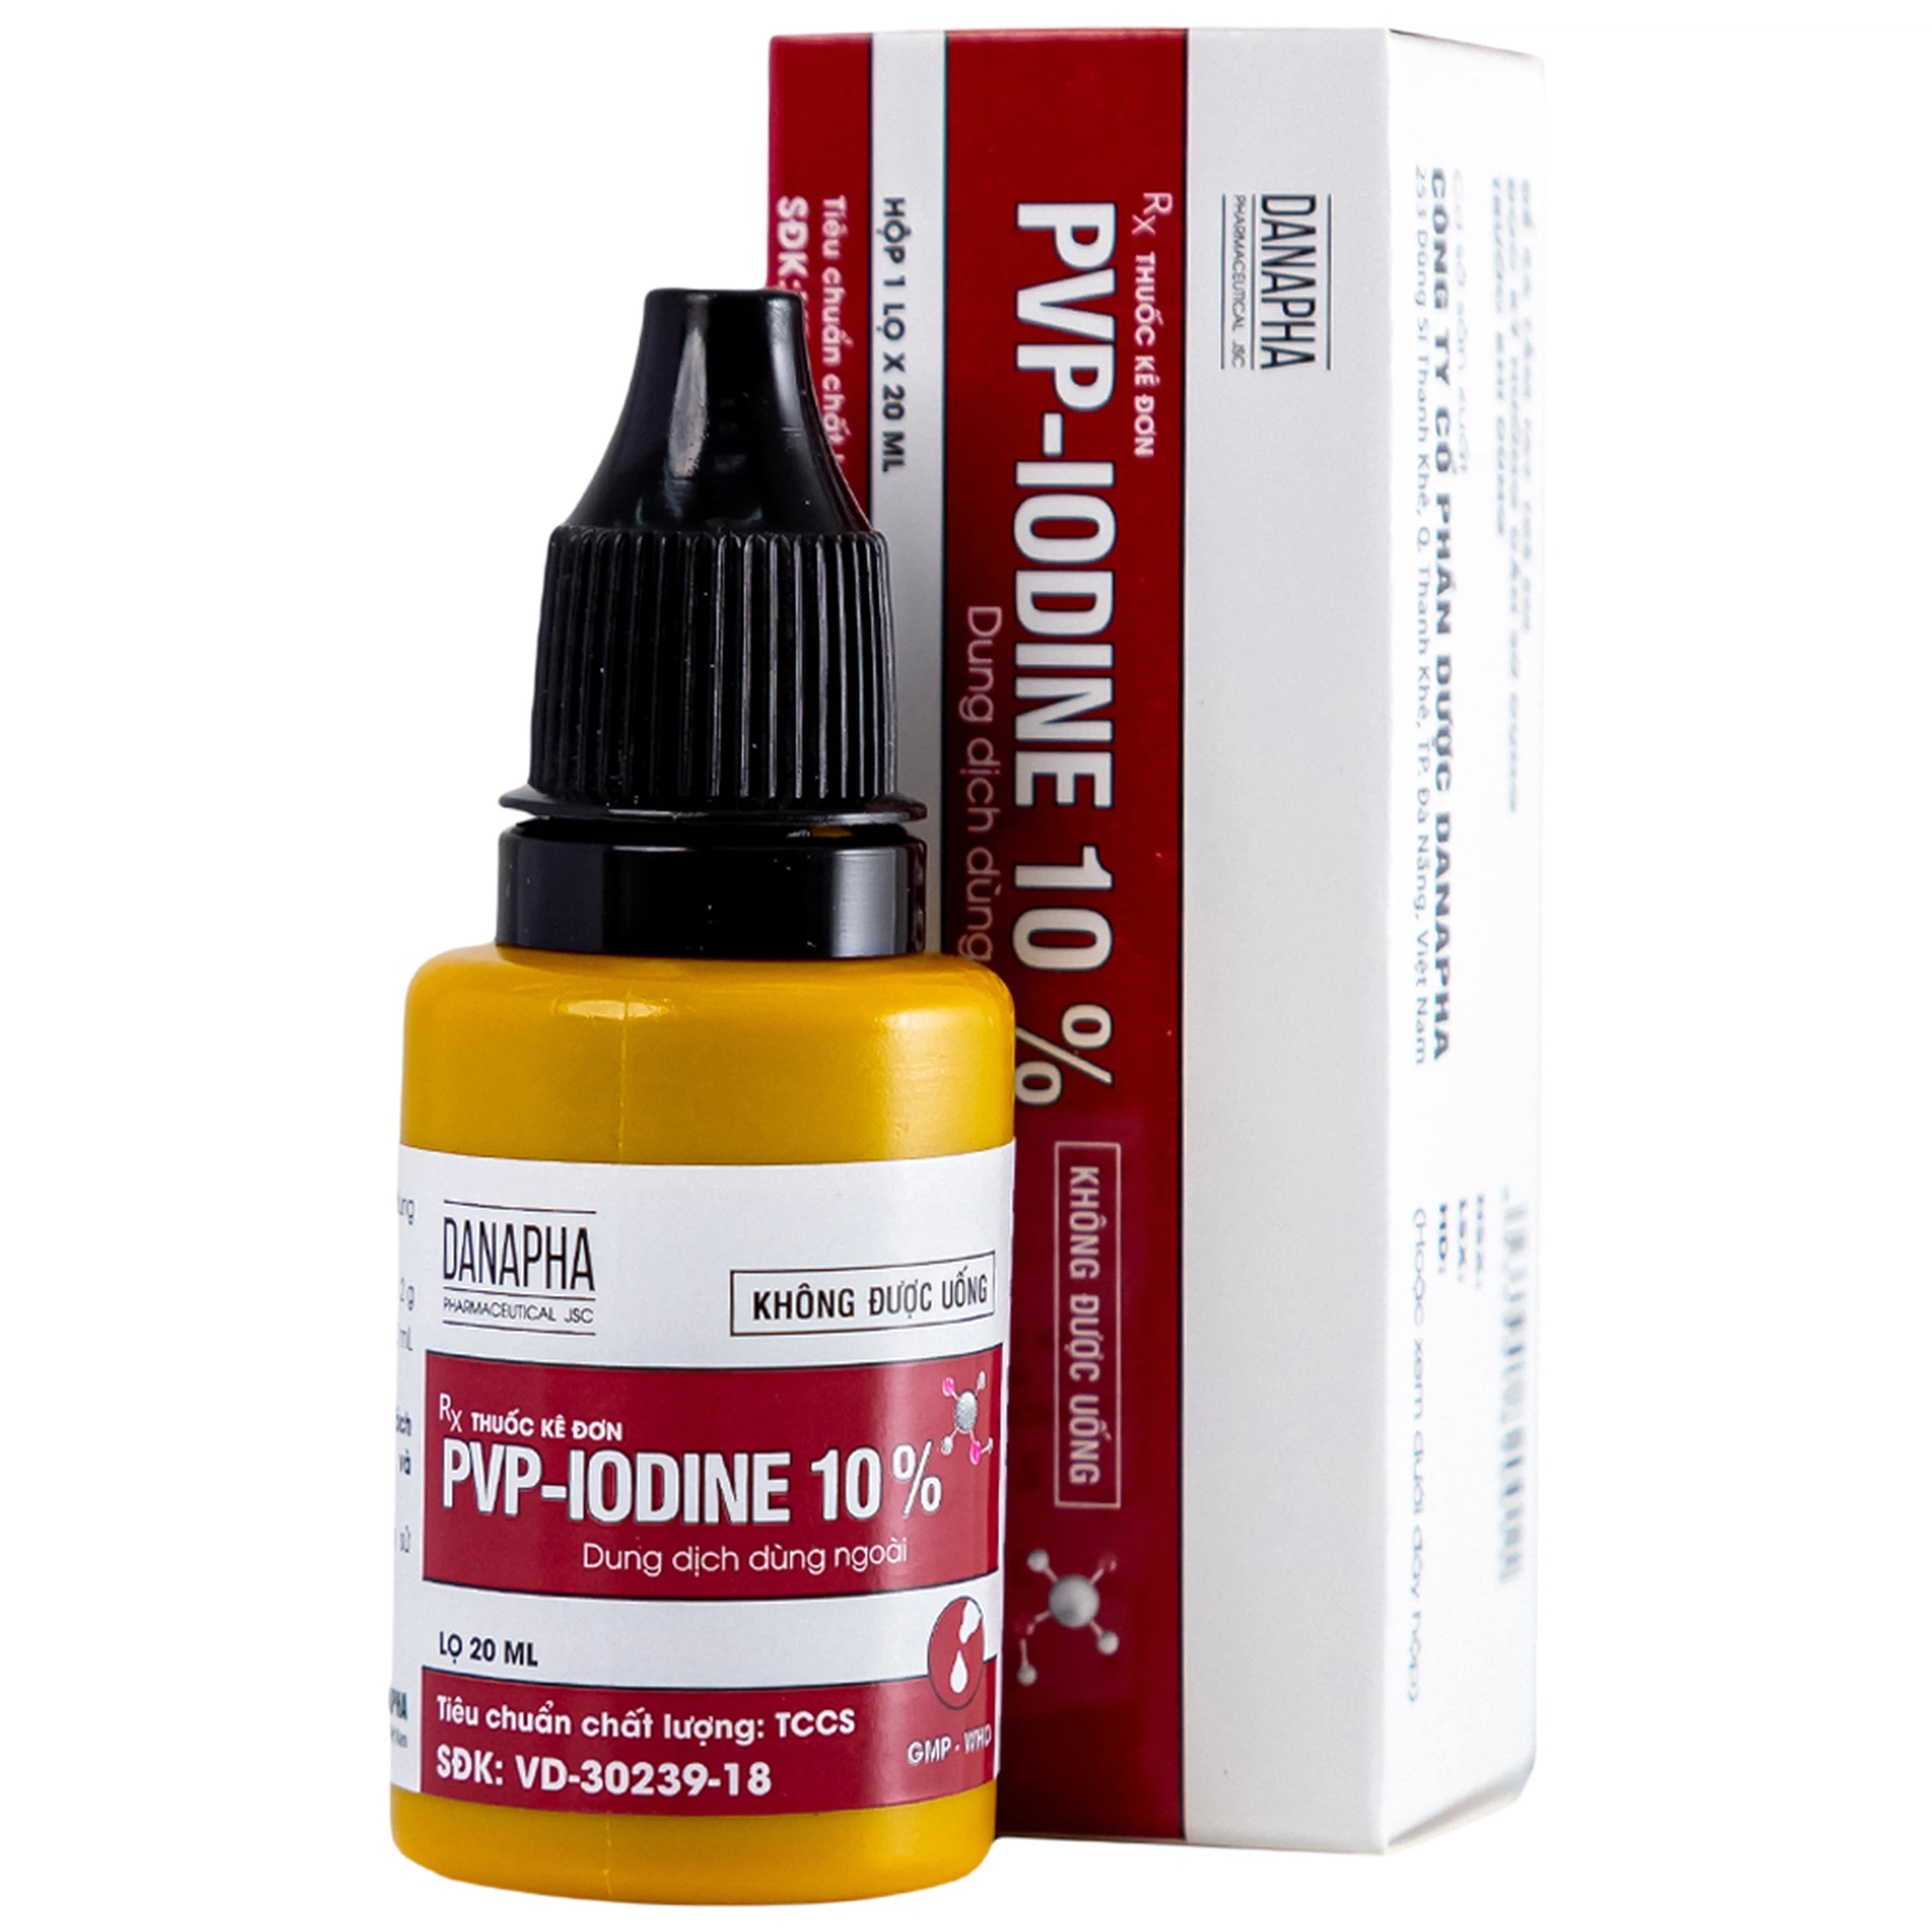 Dung dịch PVP - IODINE 10% Danapha sát trùng vết thương hoặc vết bỏng bề mặt (20ml)